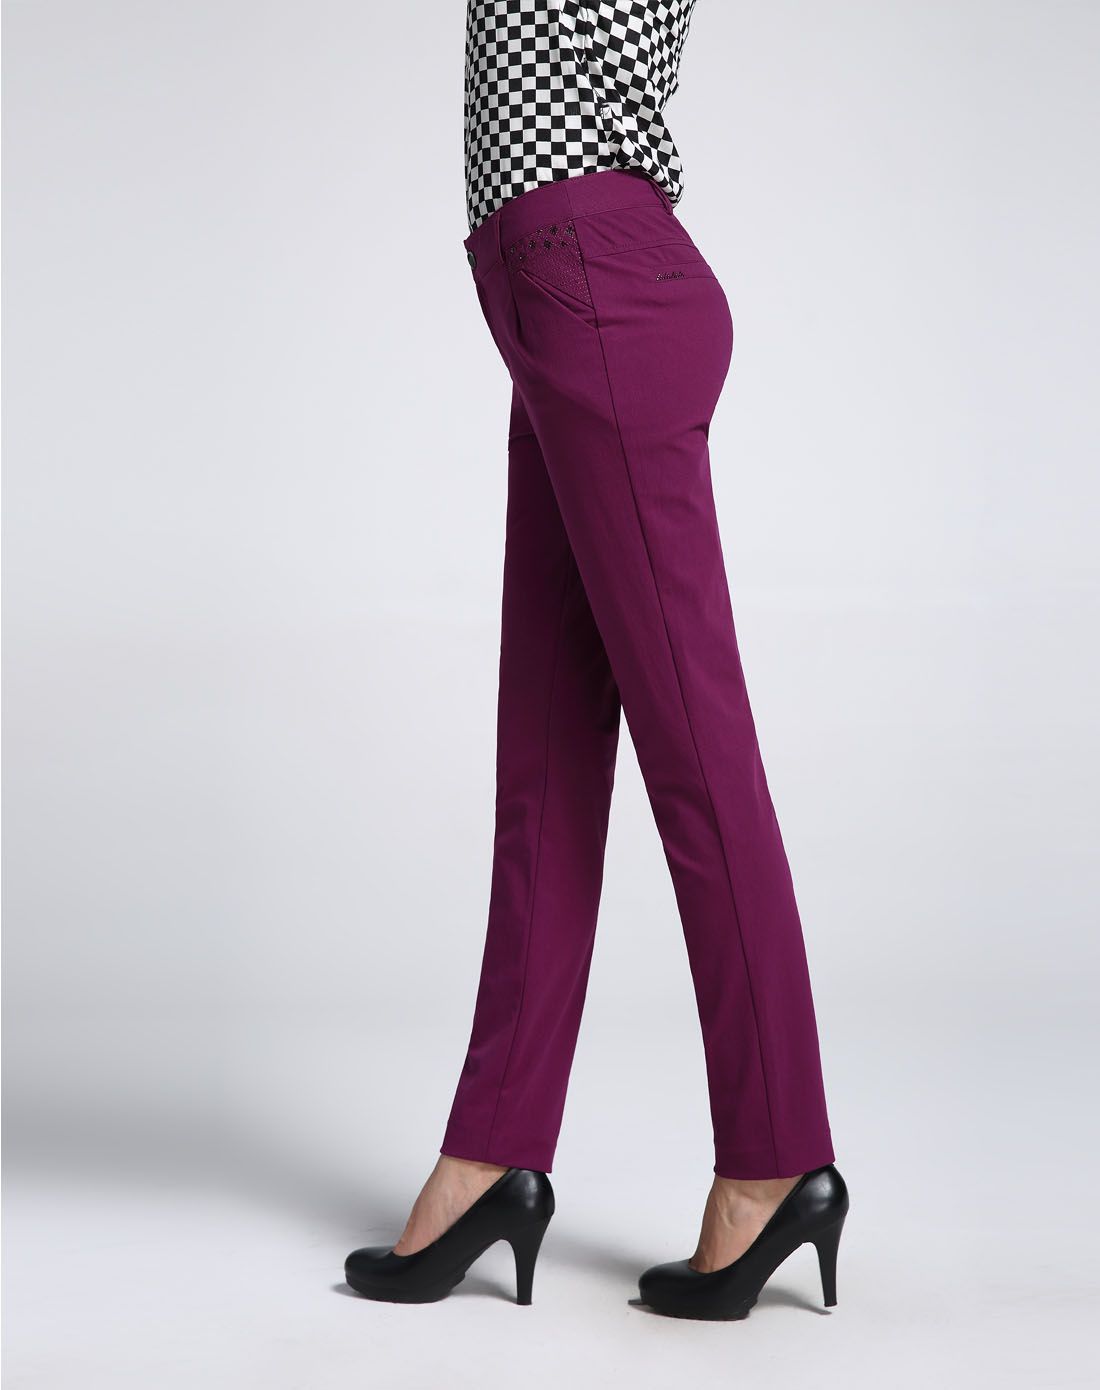 紫色时尚针织铅笔裤